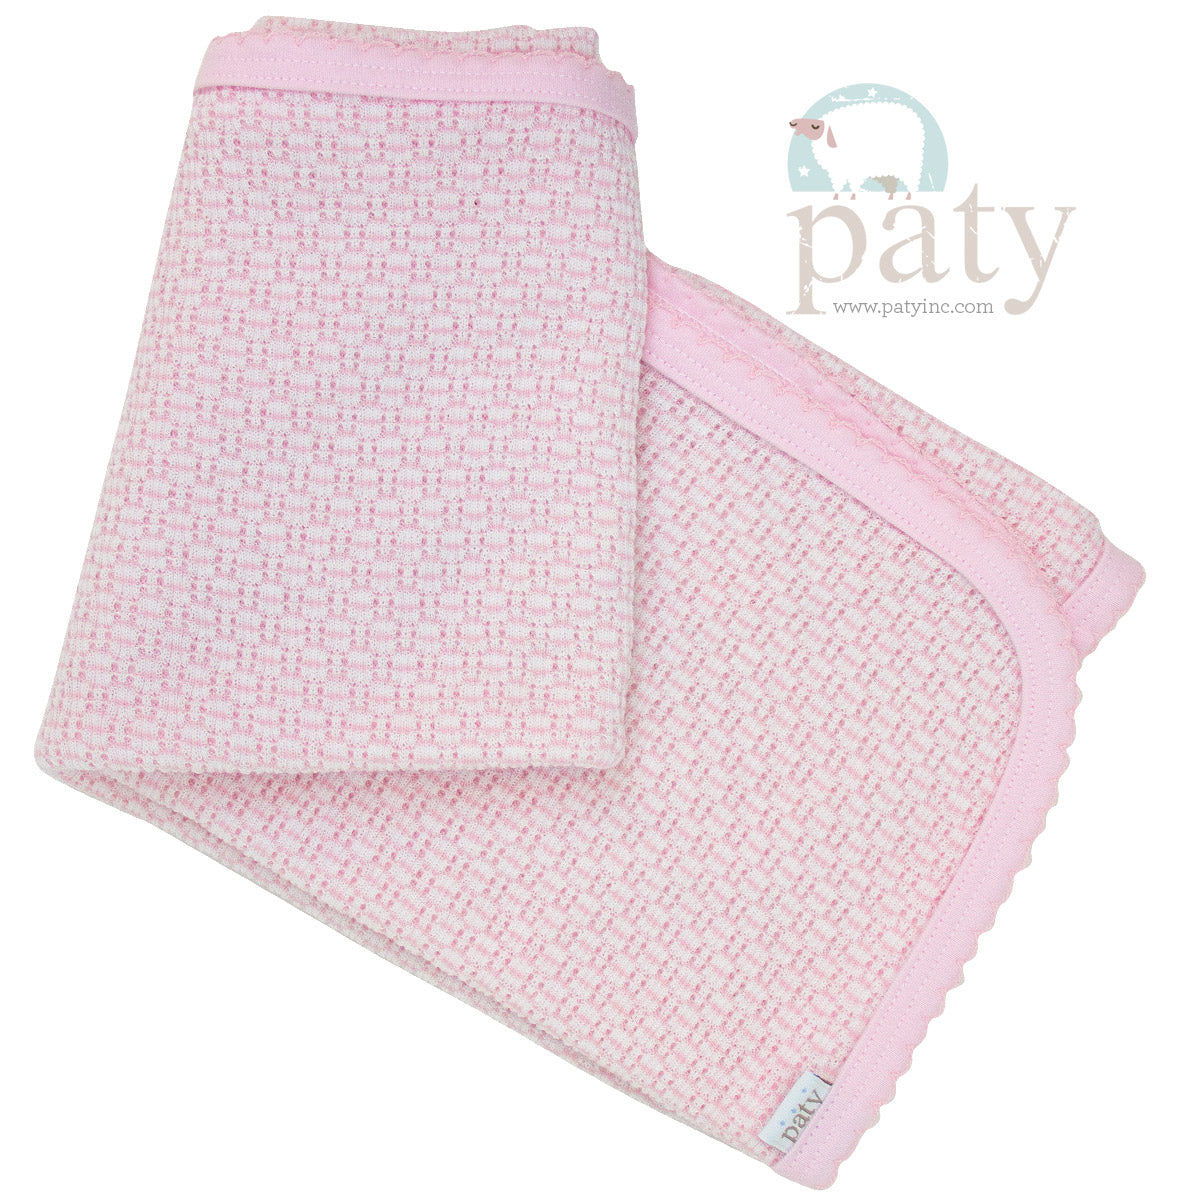 Knit Blanket w/ Pima Cotton Trim Options